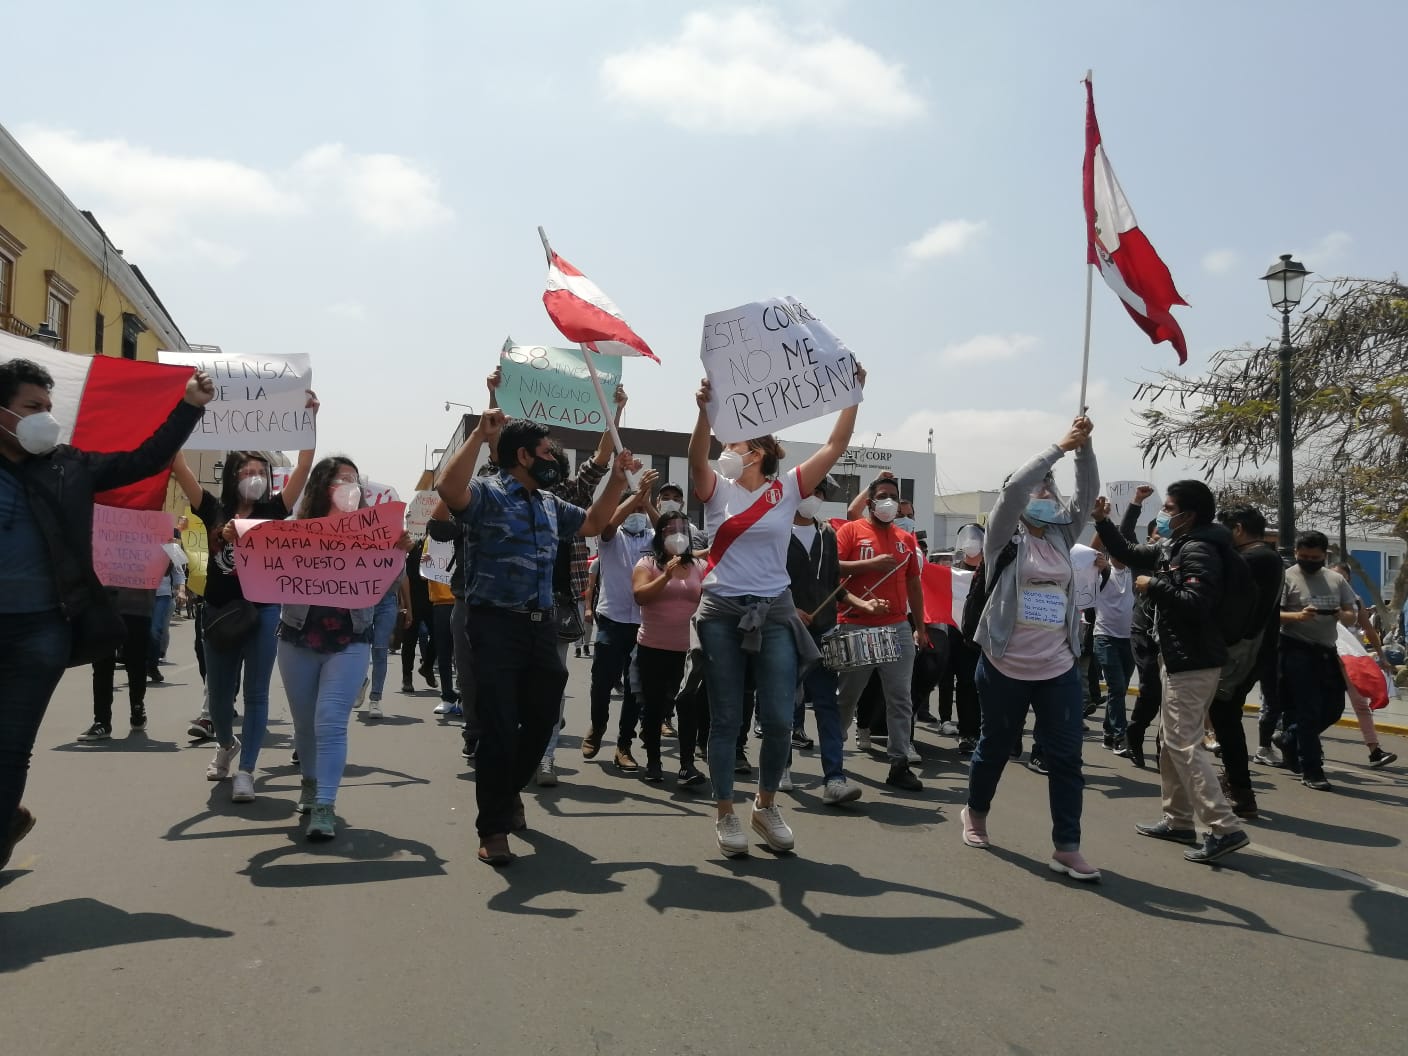 Perú: Merino tomó posesión como presidente, mientras se registraron protestas